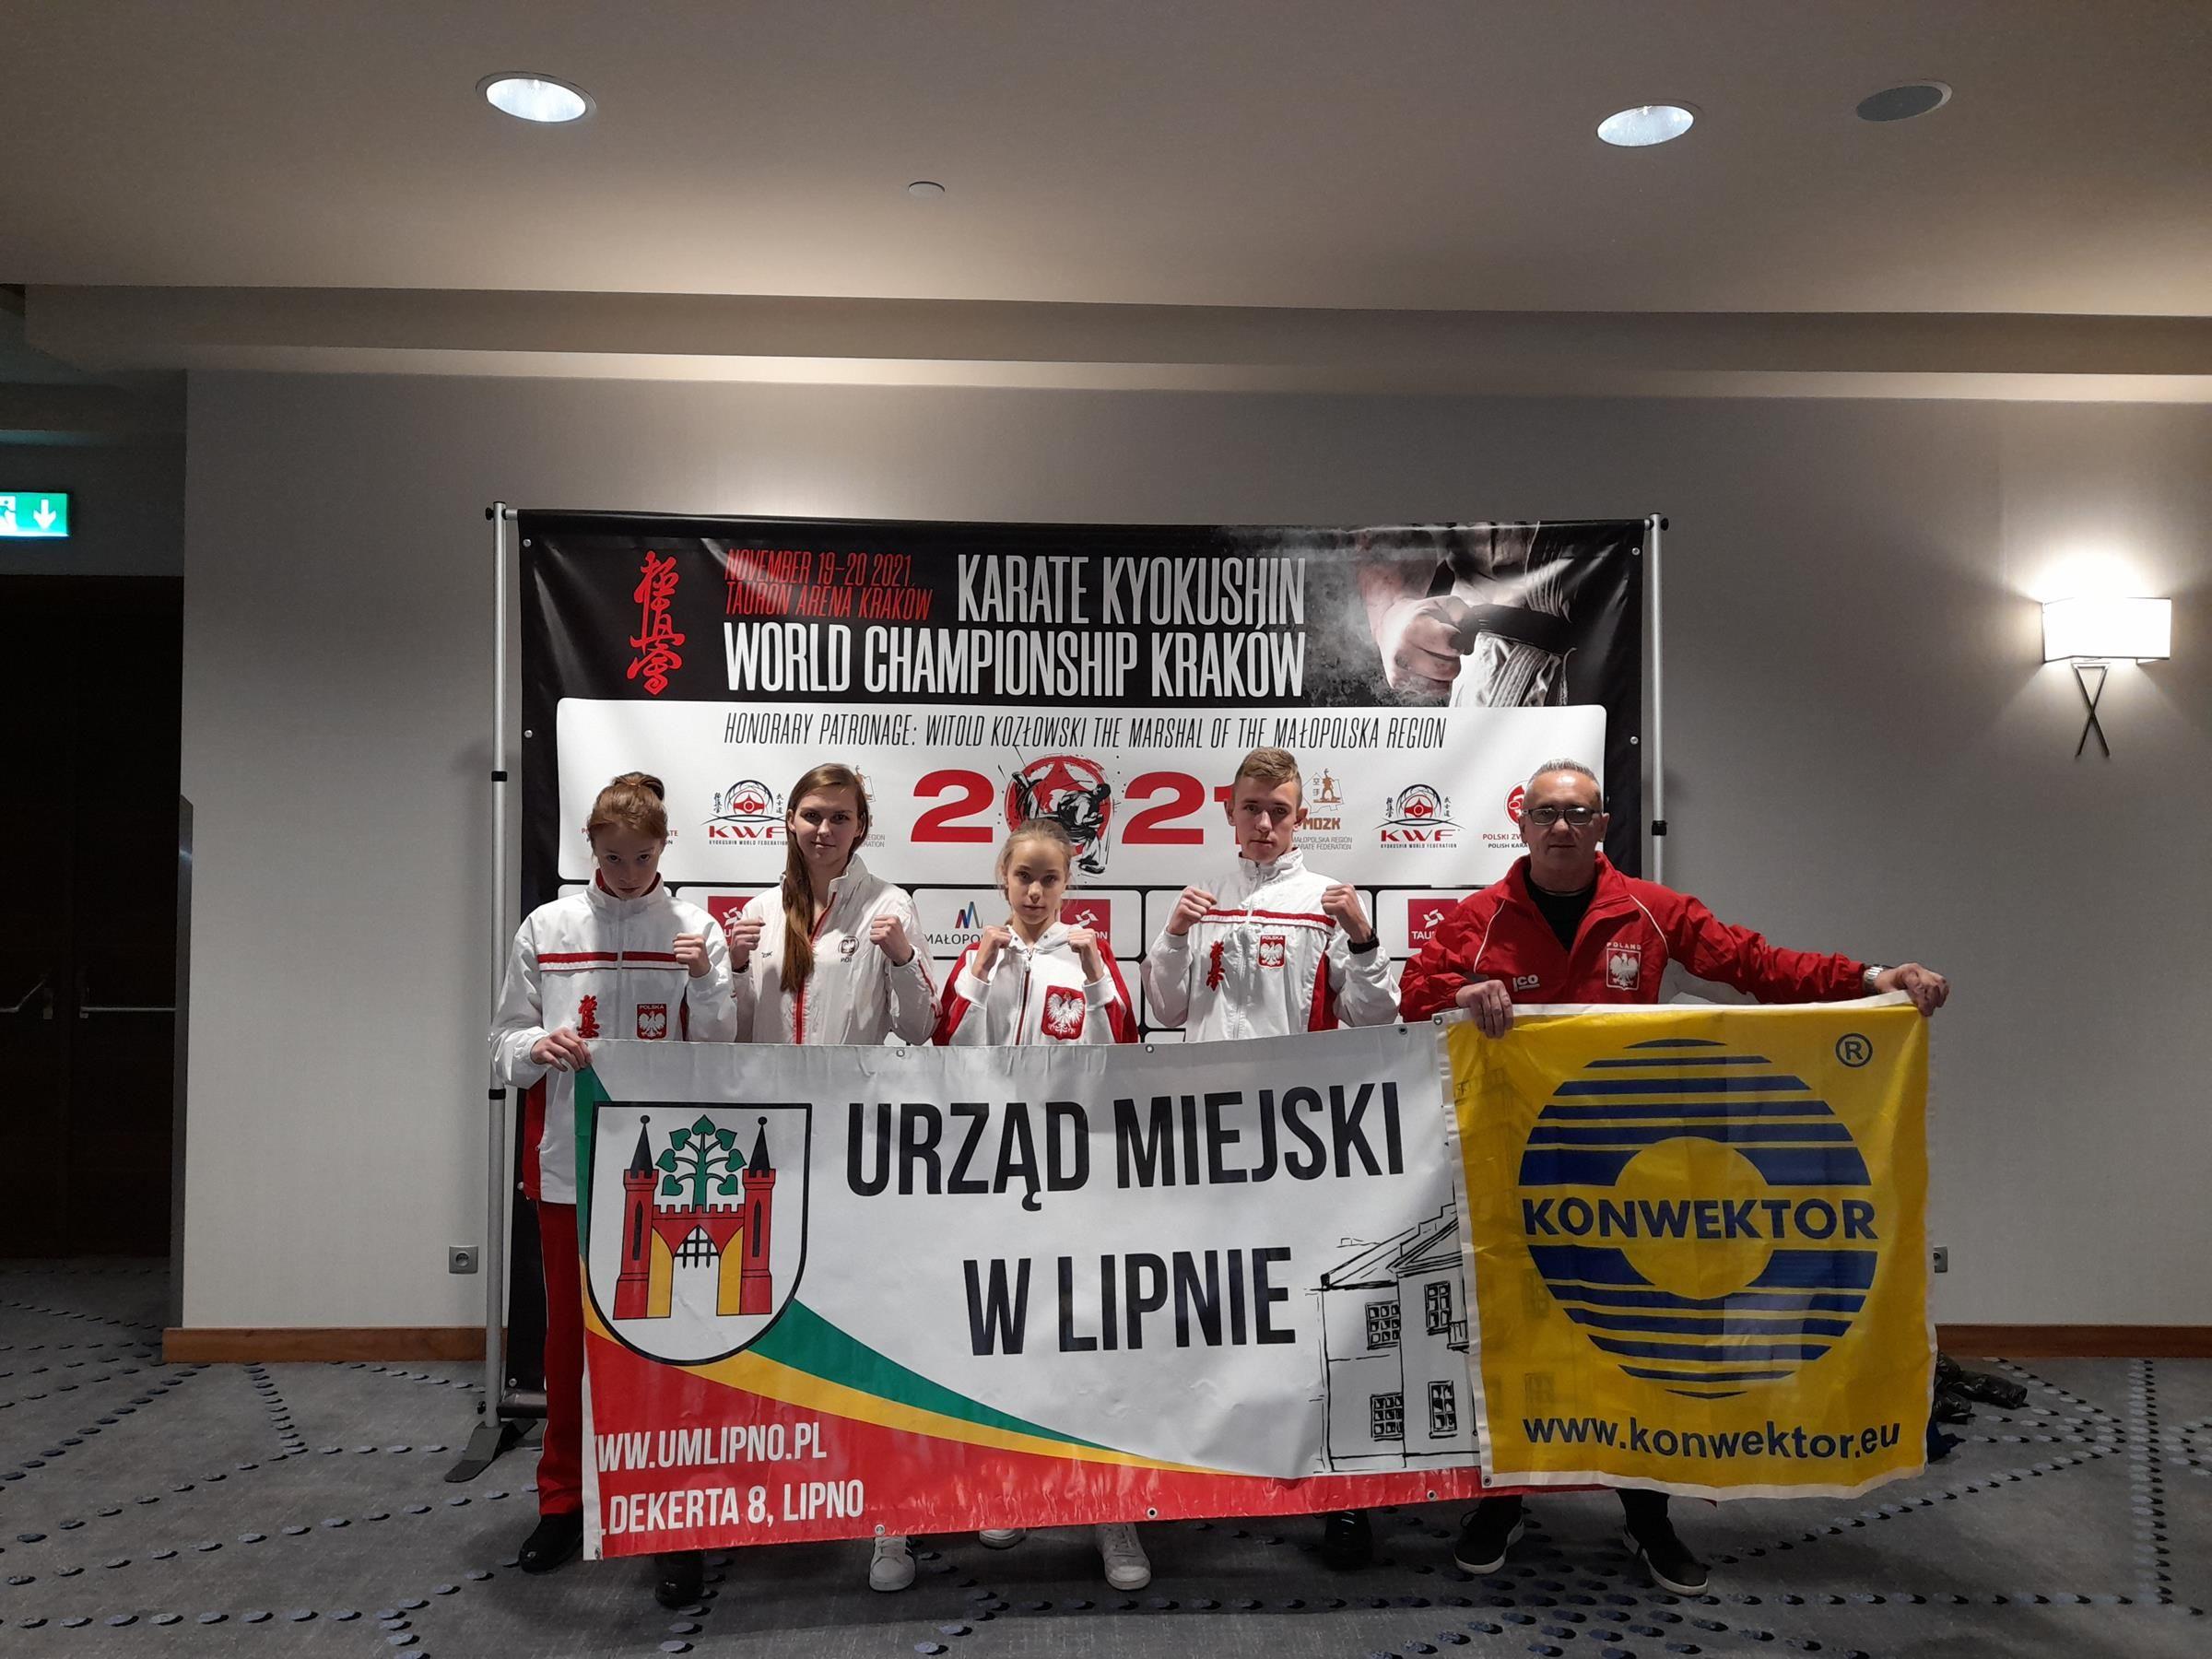 Mistrzostw Świata w Karate Kyokushin - 19-20.11.2021 r., Kraków